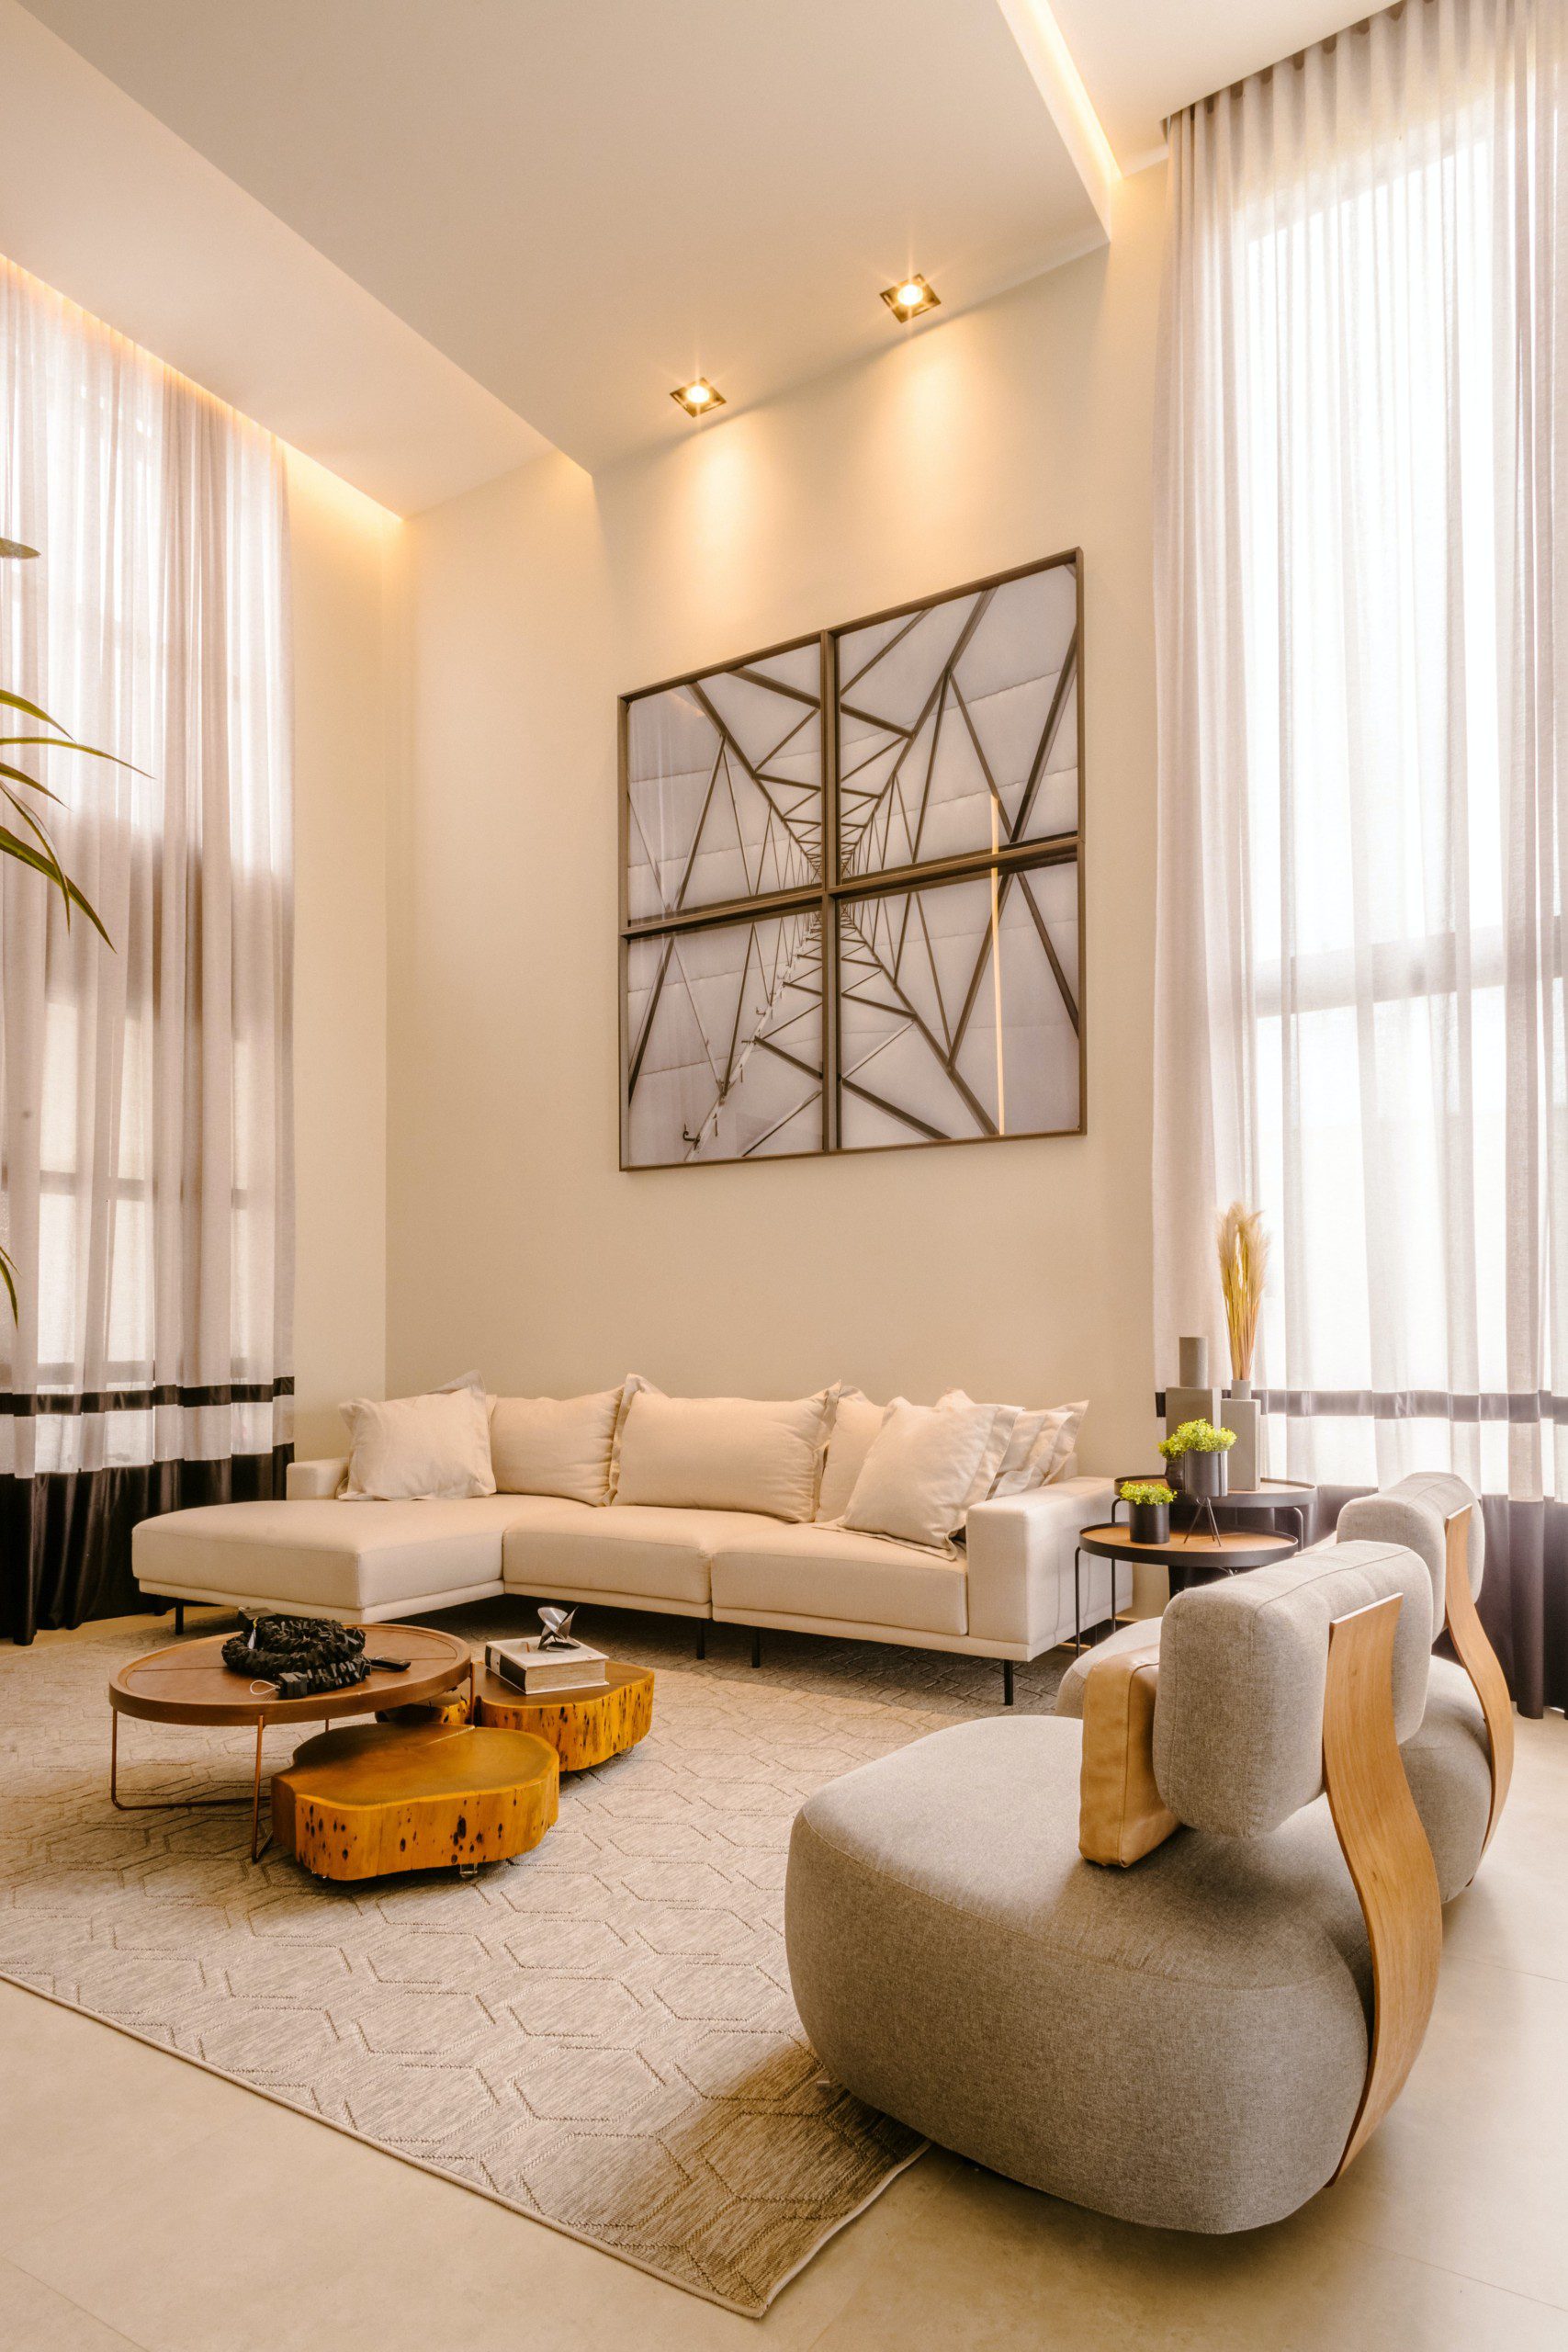 Imagem de uma sala de estar moderna e clean com sofá, tapete e luzes de destaque nos quadros.